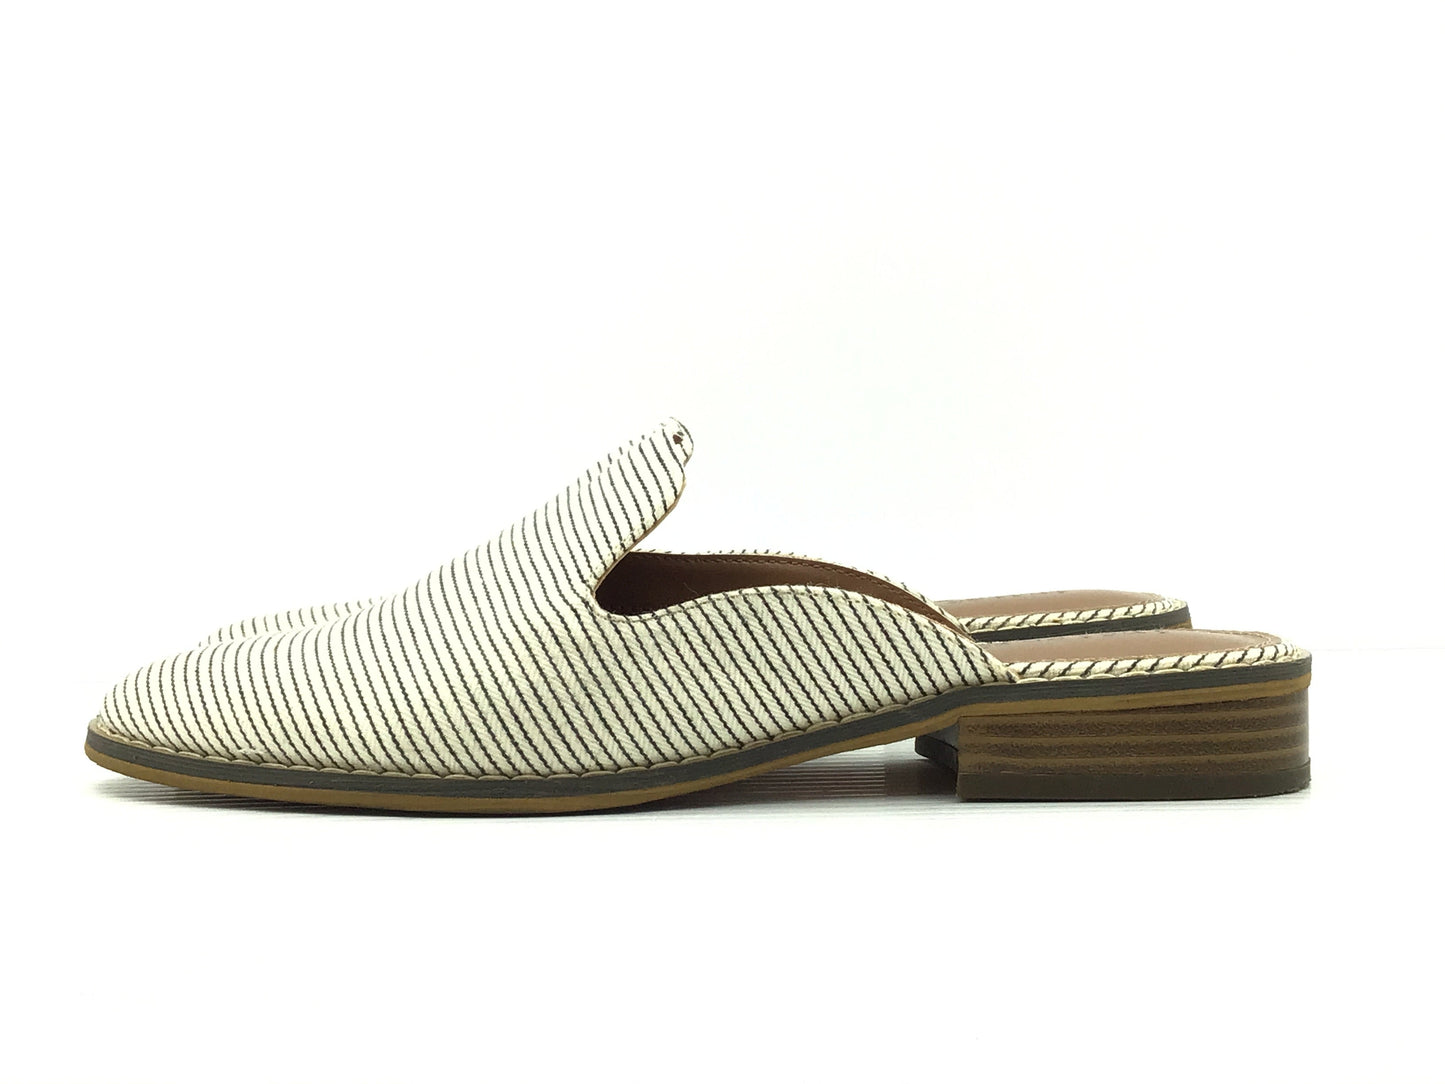 Sandals Flip Flops By Indigo Rd  Size: 7